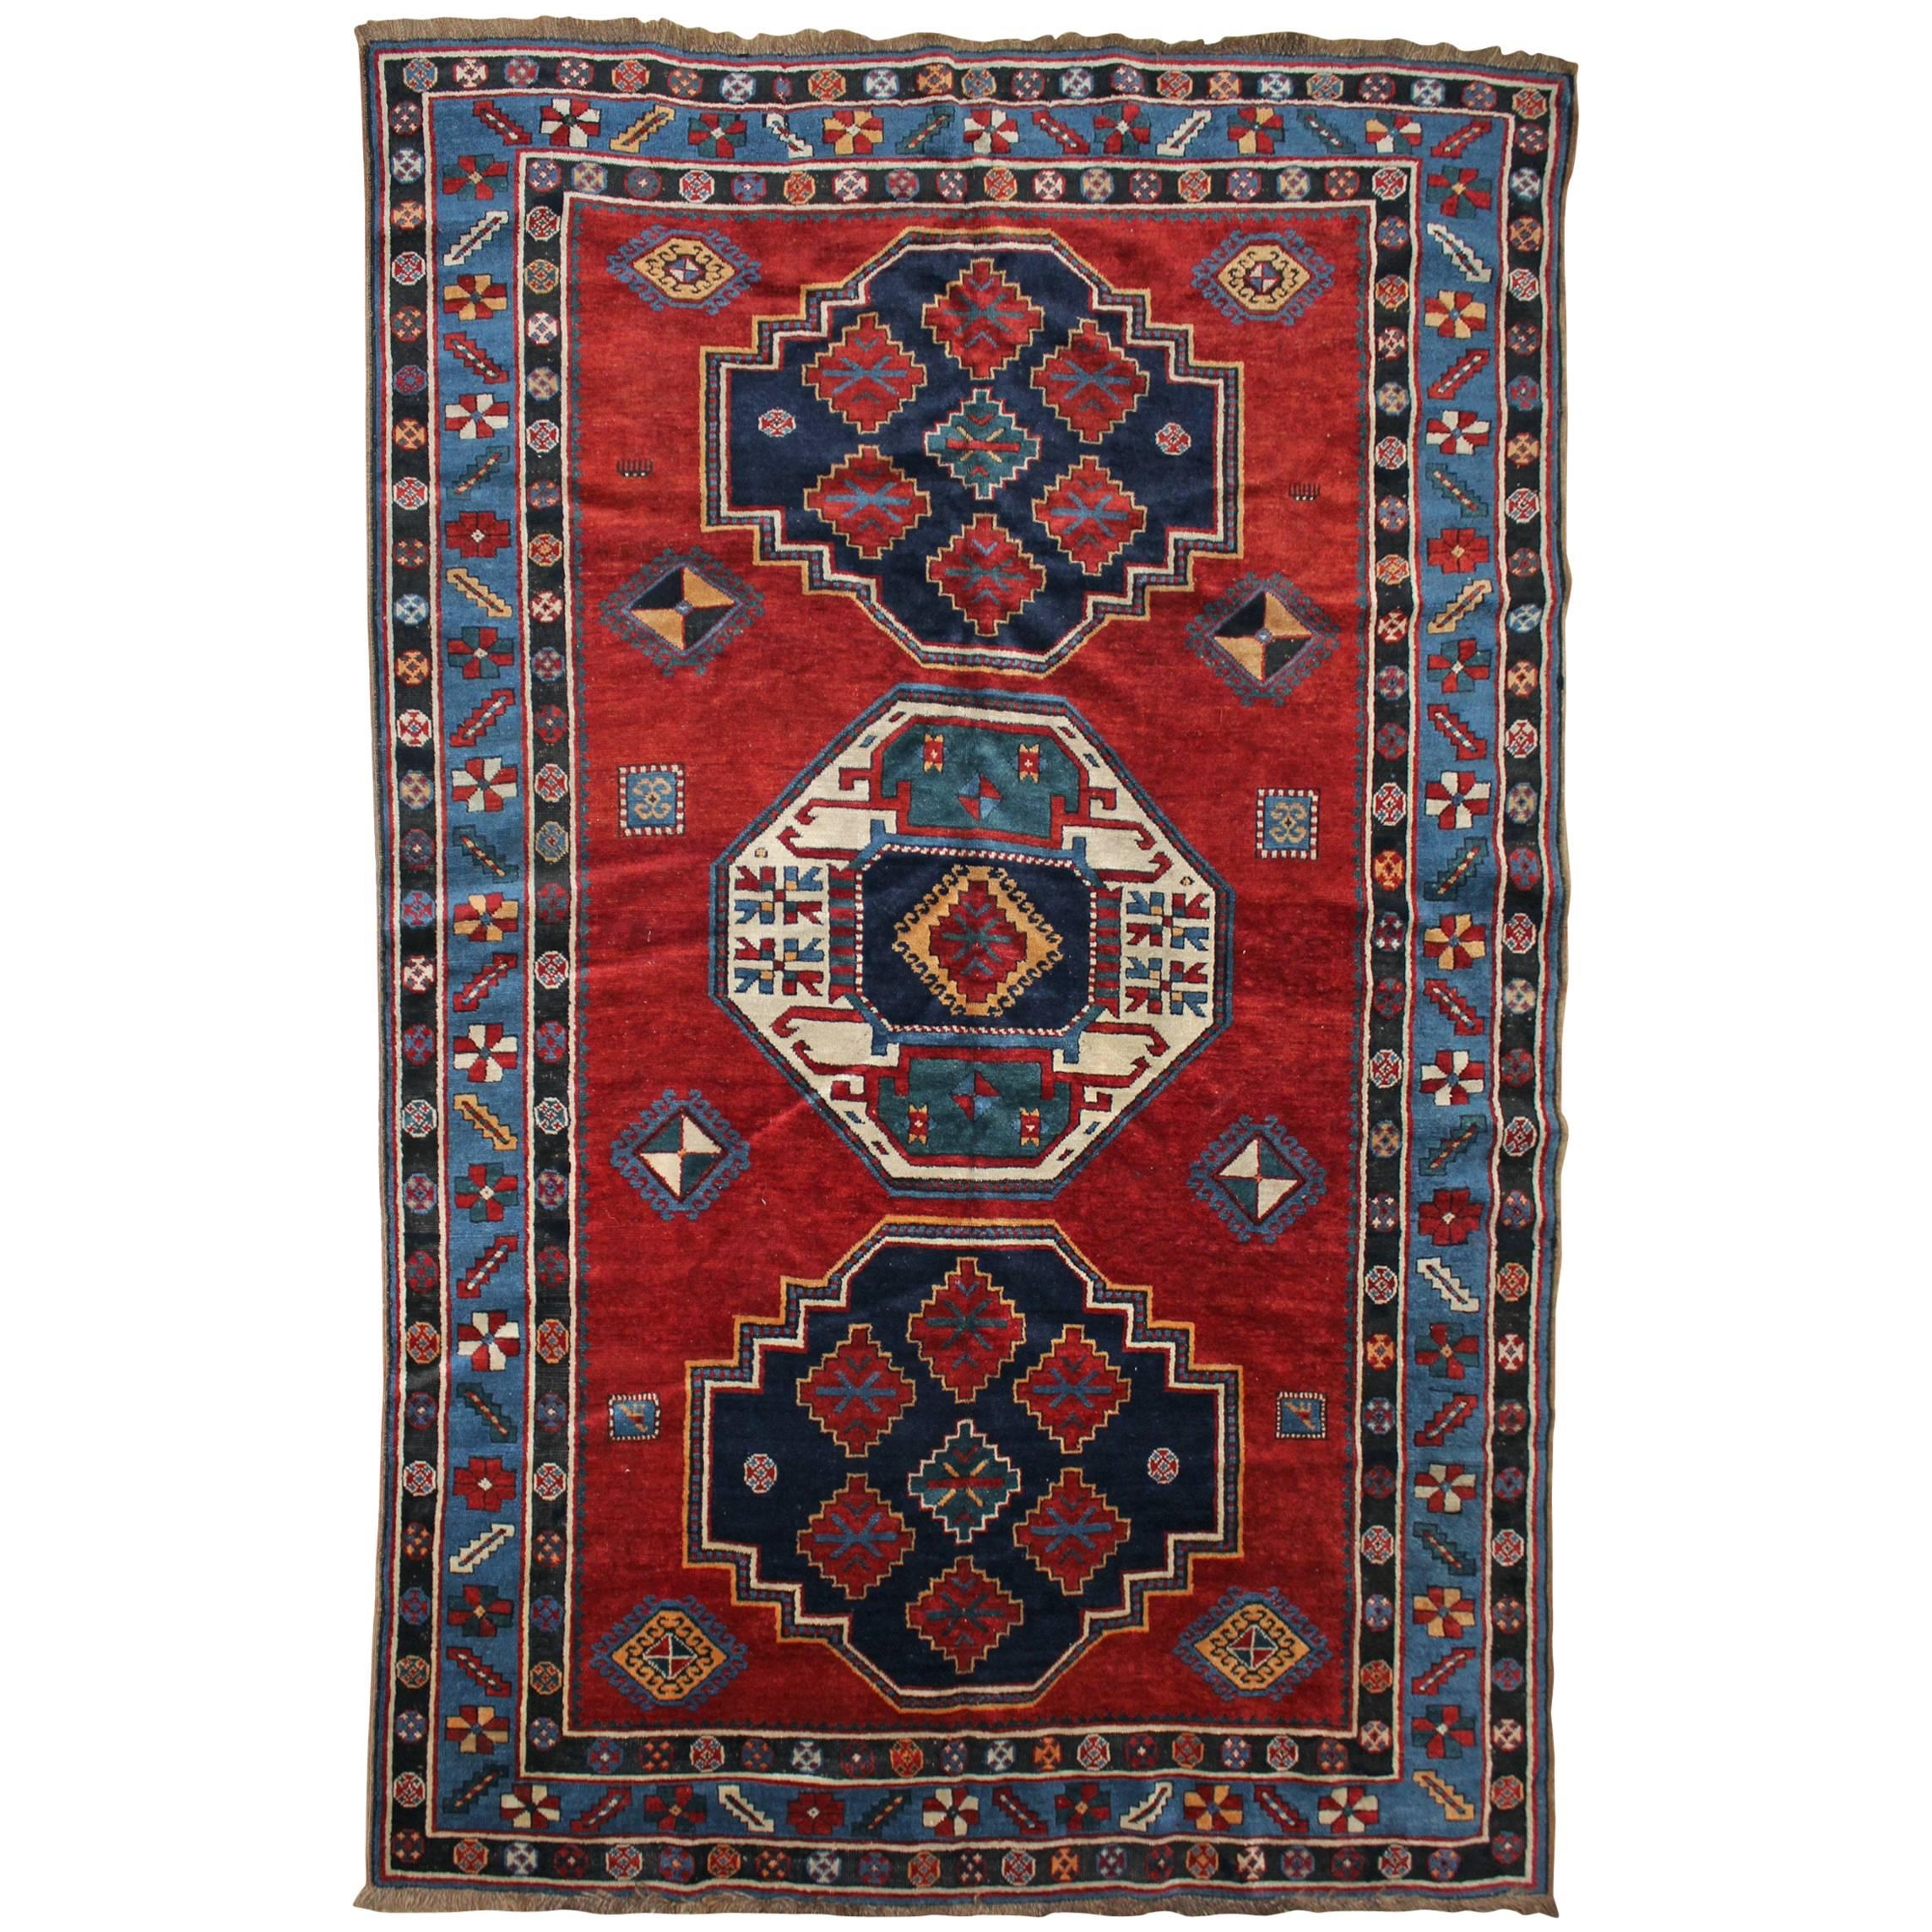 Kazak Scatter Rug or Carpet circa 1900